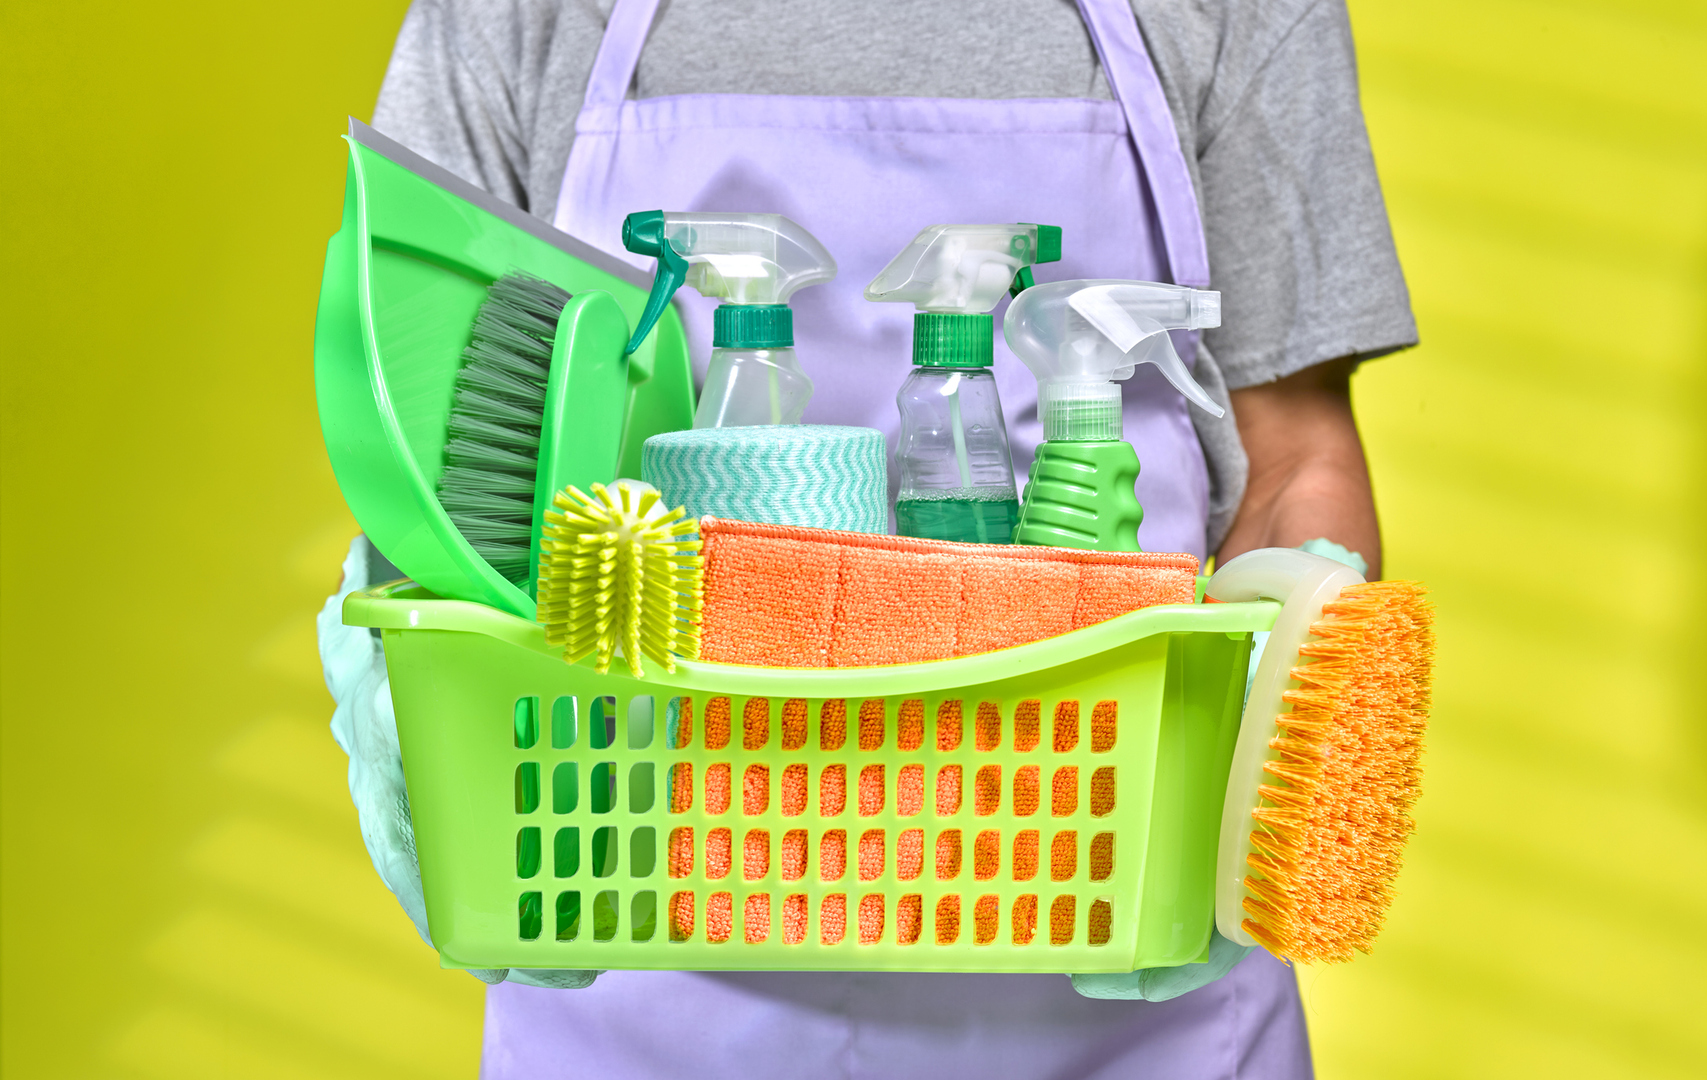 تحذير من منتجين للتنظيف قد يكون خلطهما معا قاتلا